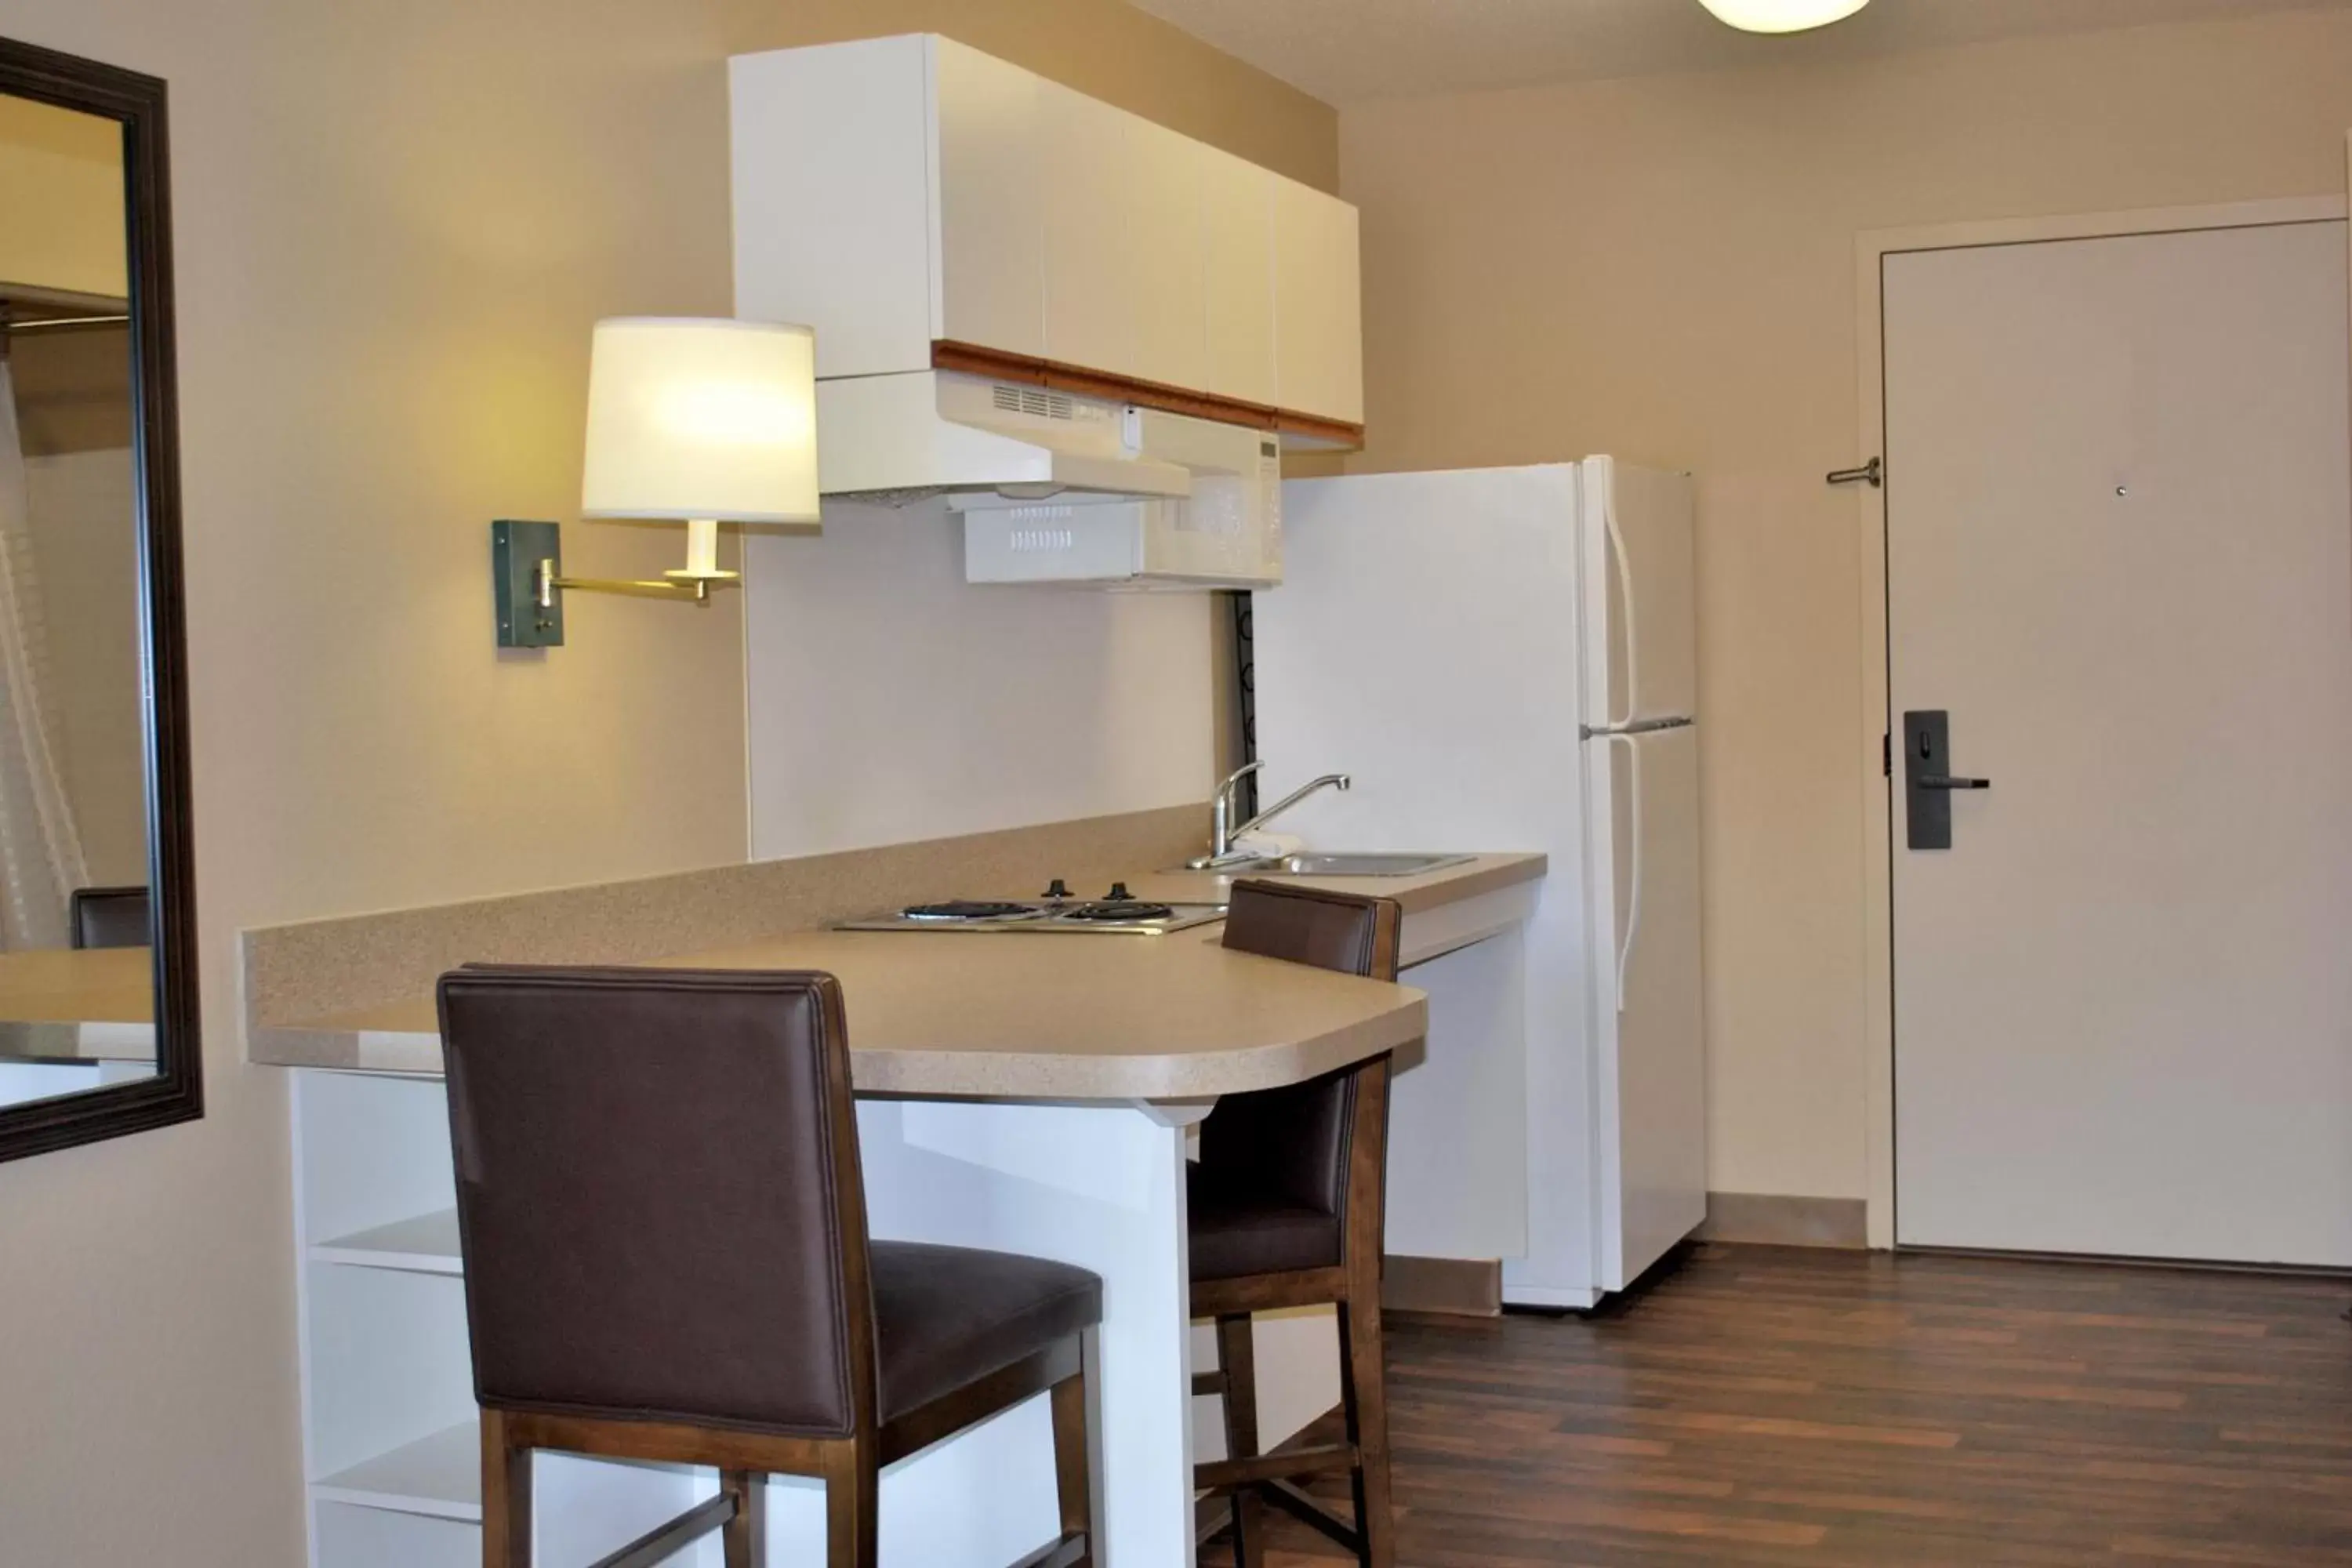 Kitchen or kitchenette, Kitchen/Kitchenette in Extended Stay America Suites - San Francisco - San Carlos